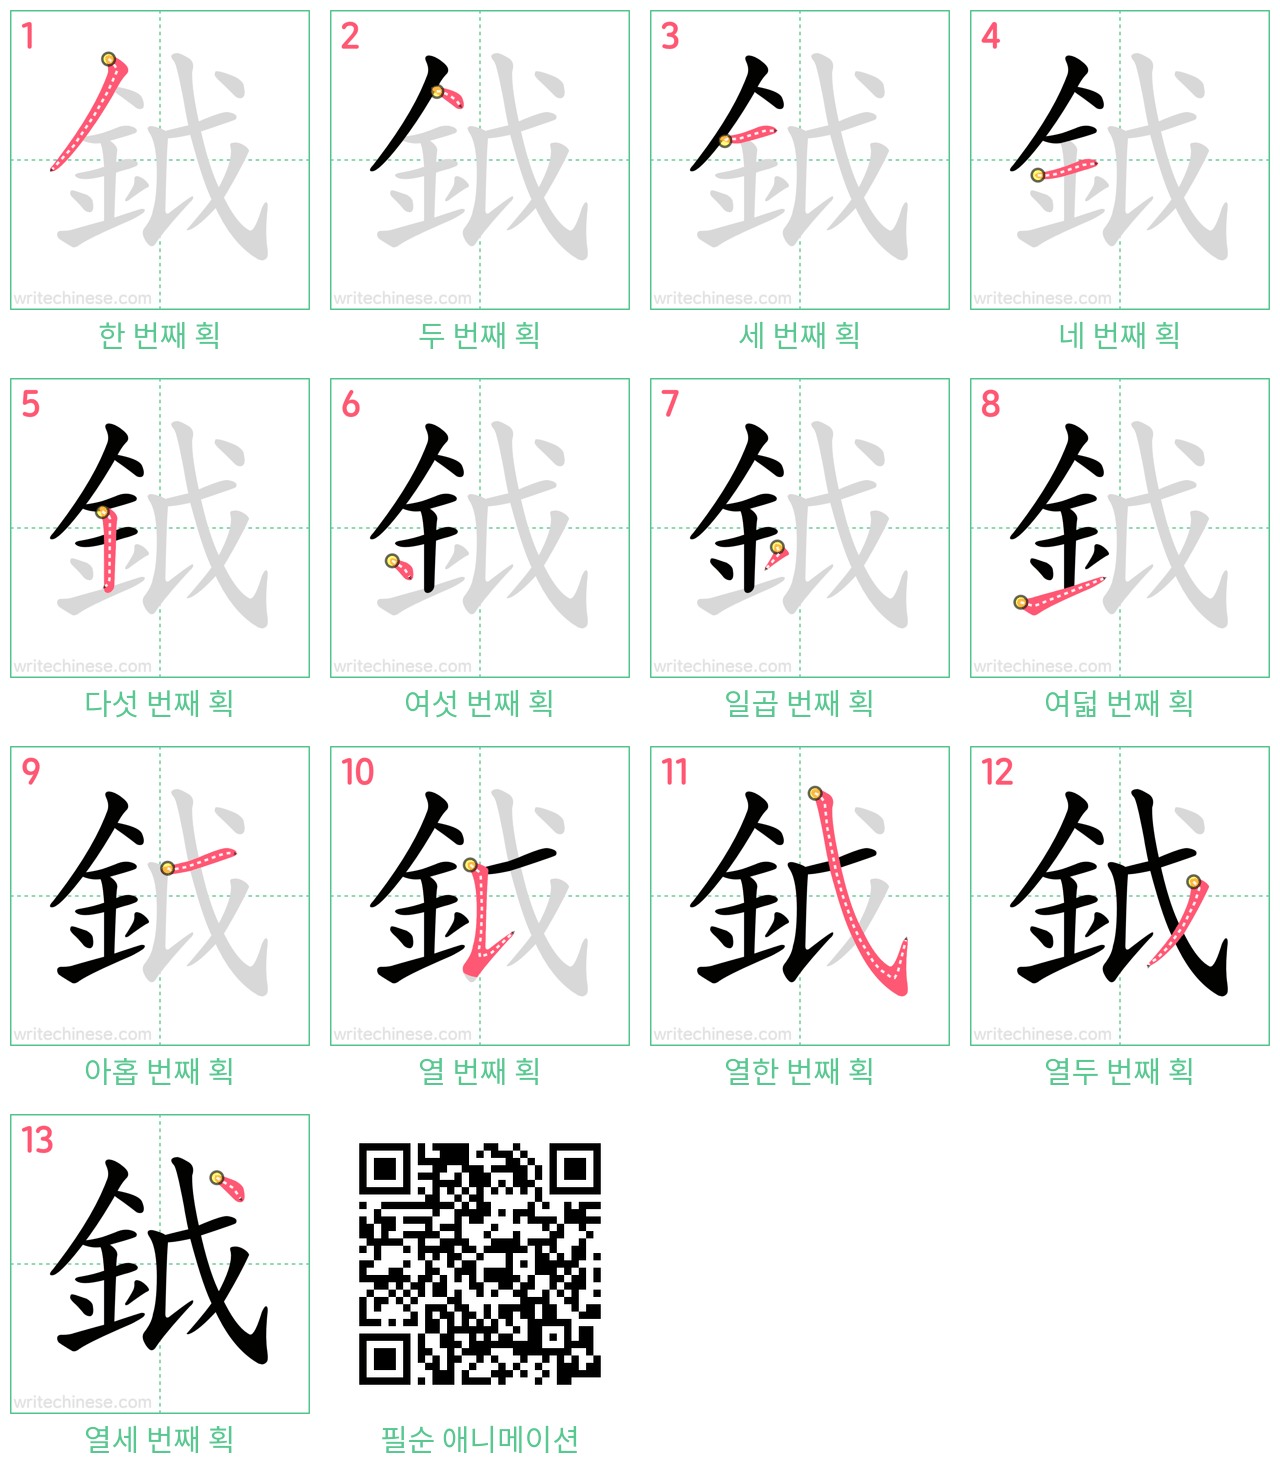 鉞 step-by-step stroke order diagrams